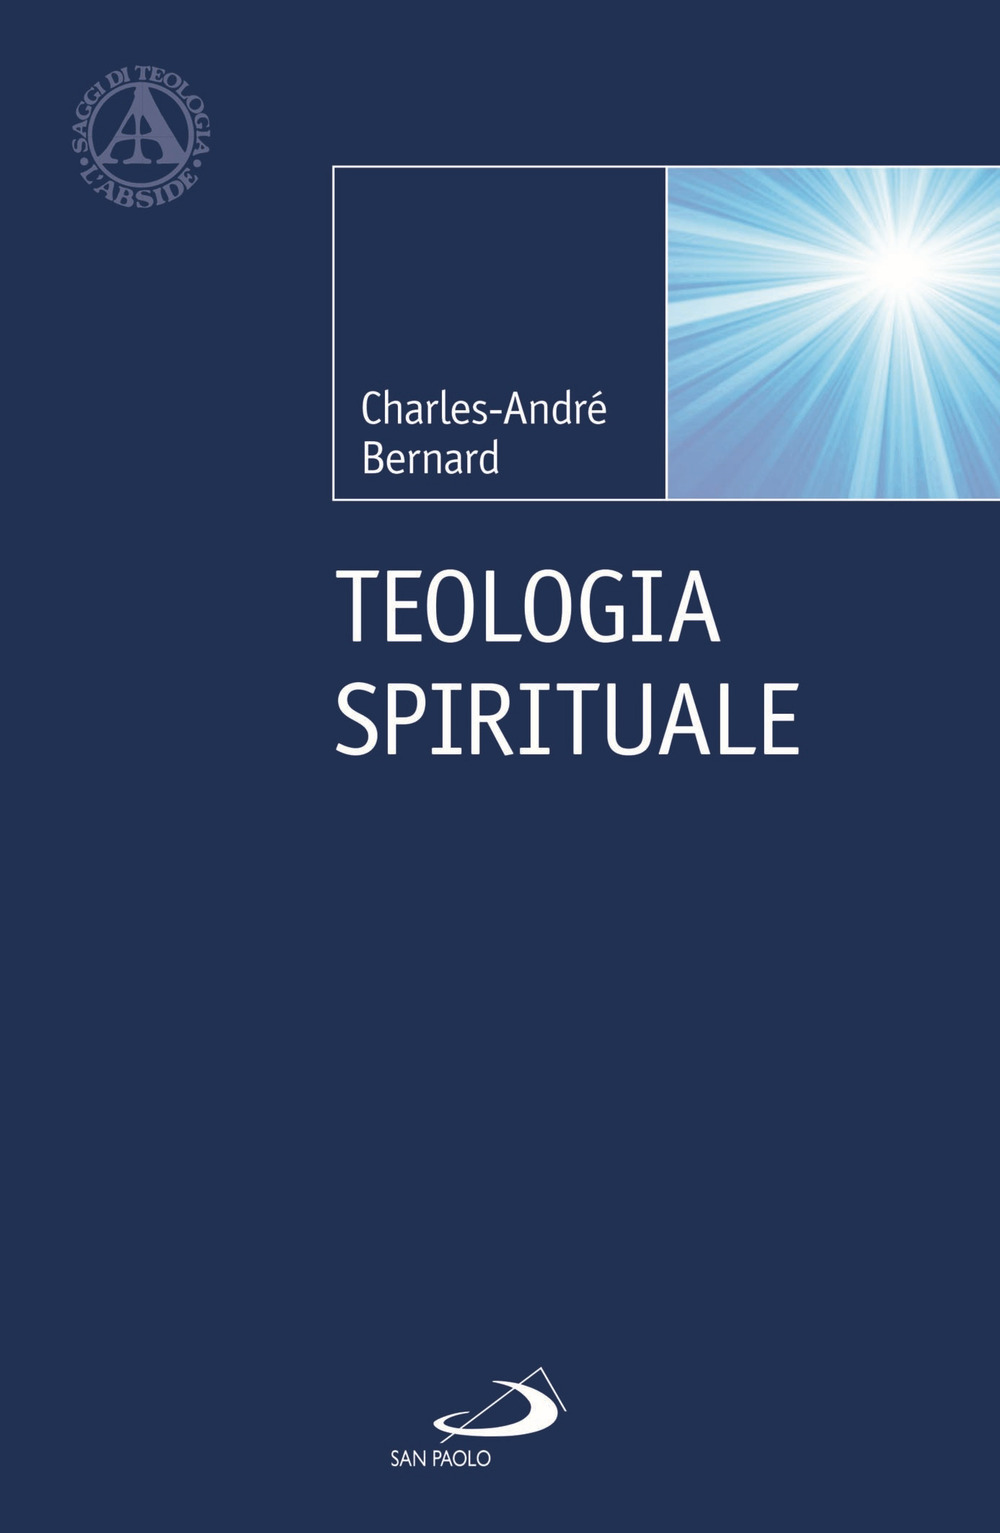 Libri Charles-André Bernard - Teologia Spirituale NUOVO SIGILLATO, EDIZIONE DEL 30/11/2021 SUBITO DISPONIBILE